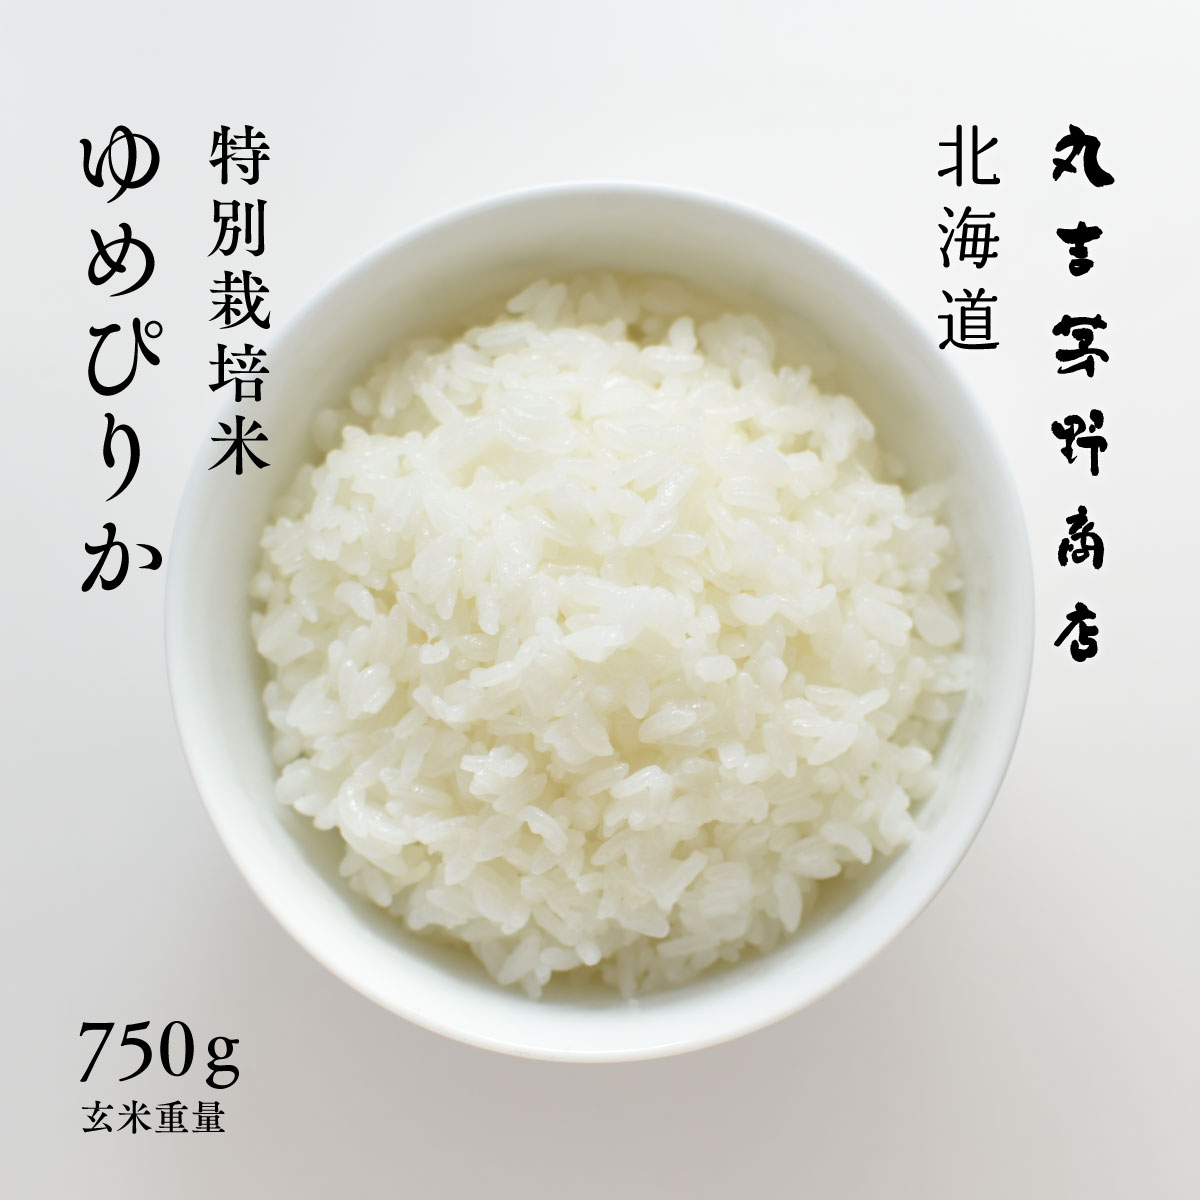 特別栽培米 ゆめぴり